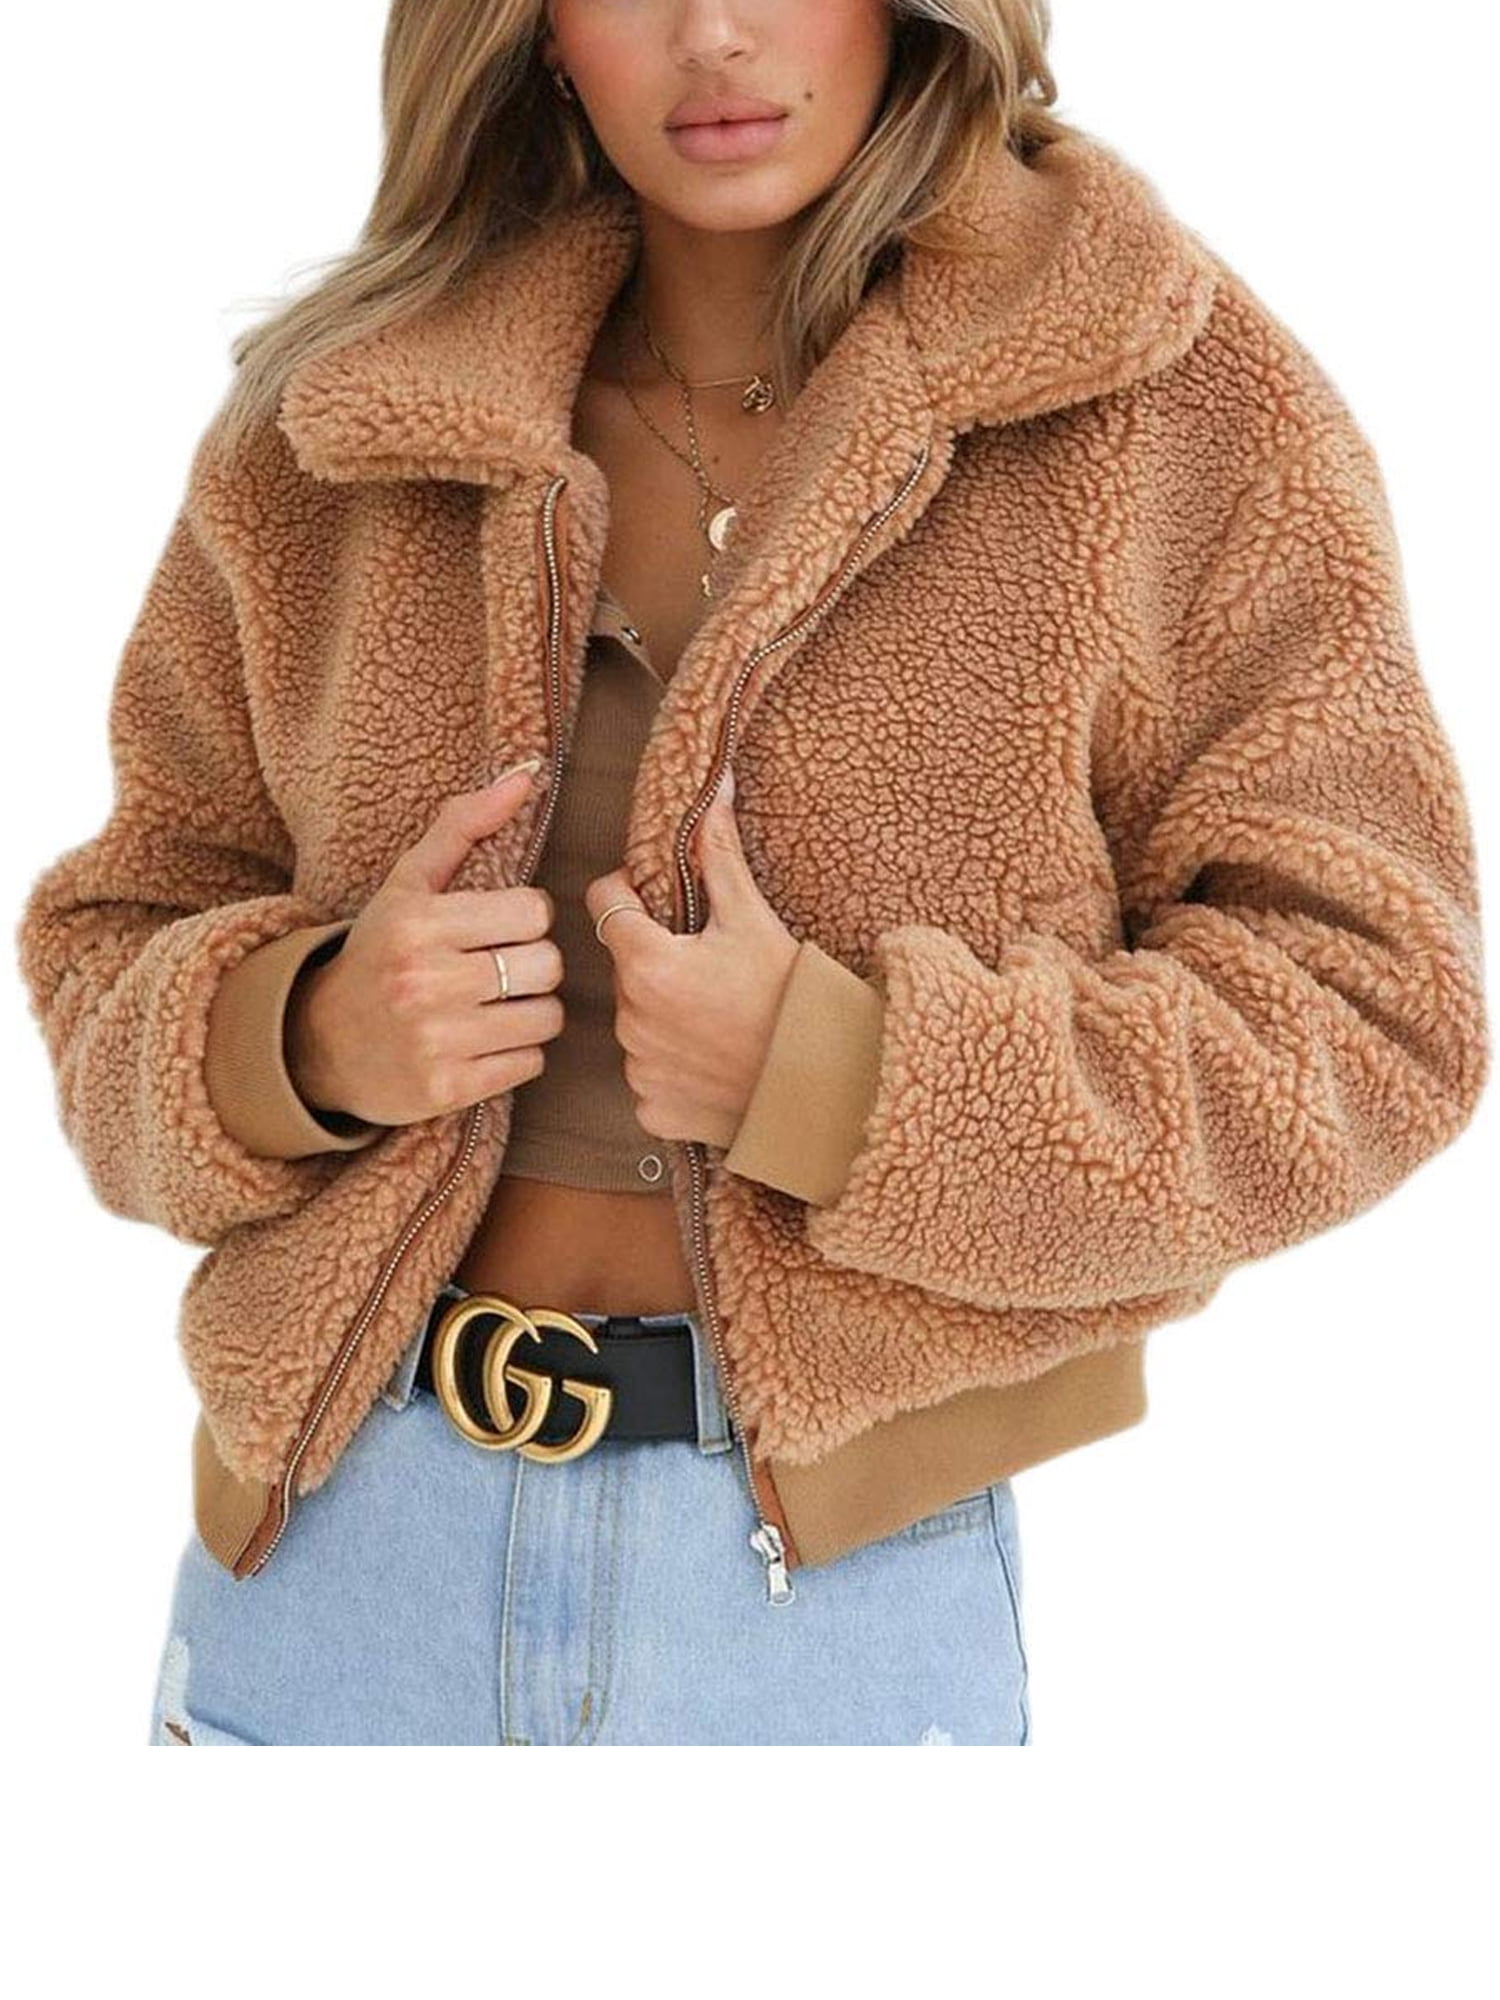 Womens Thick Warm Teddy Bear Pocket Fleece Jacket Coat Zip Up Outwear ...